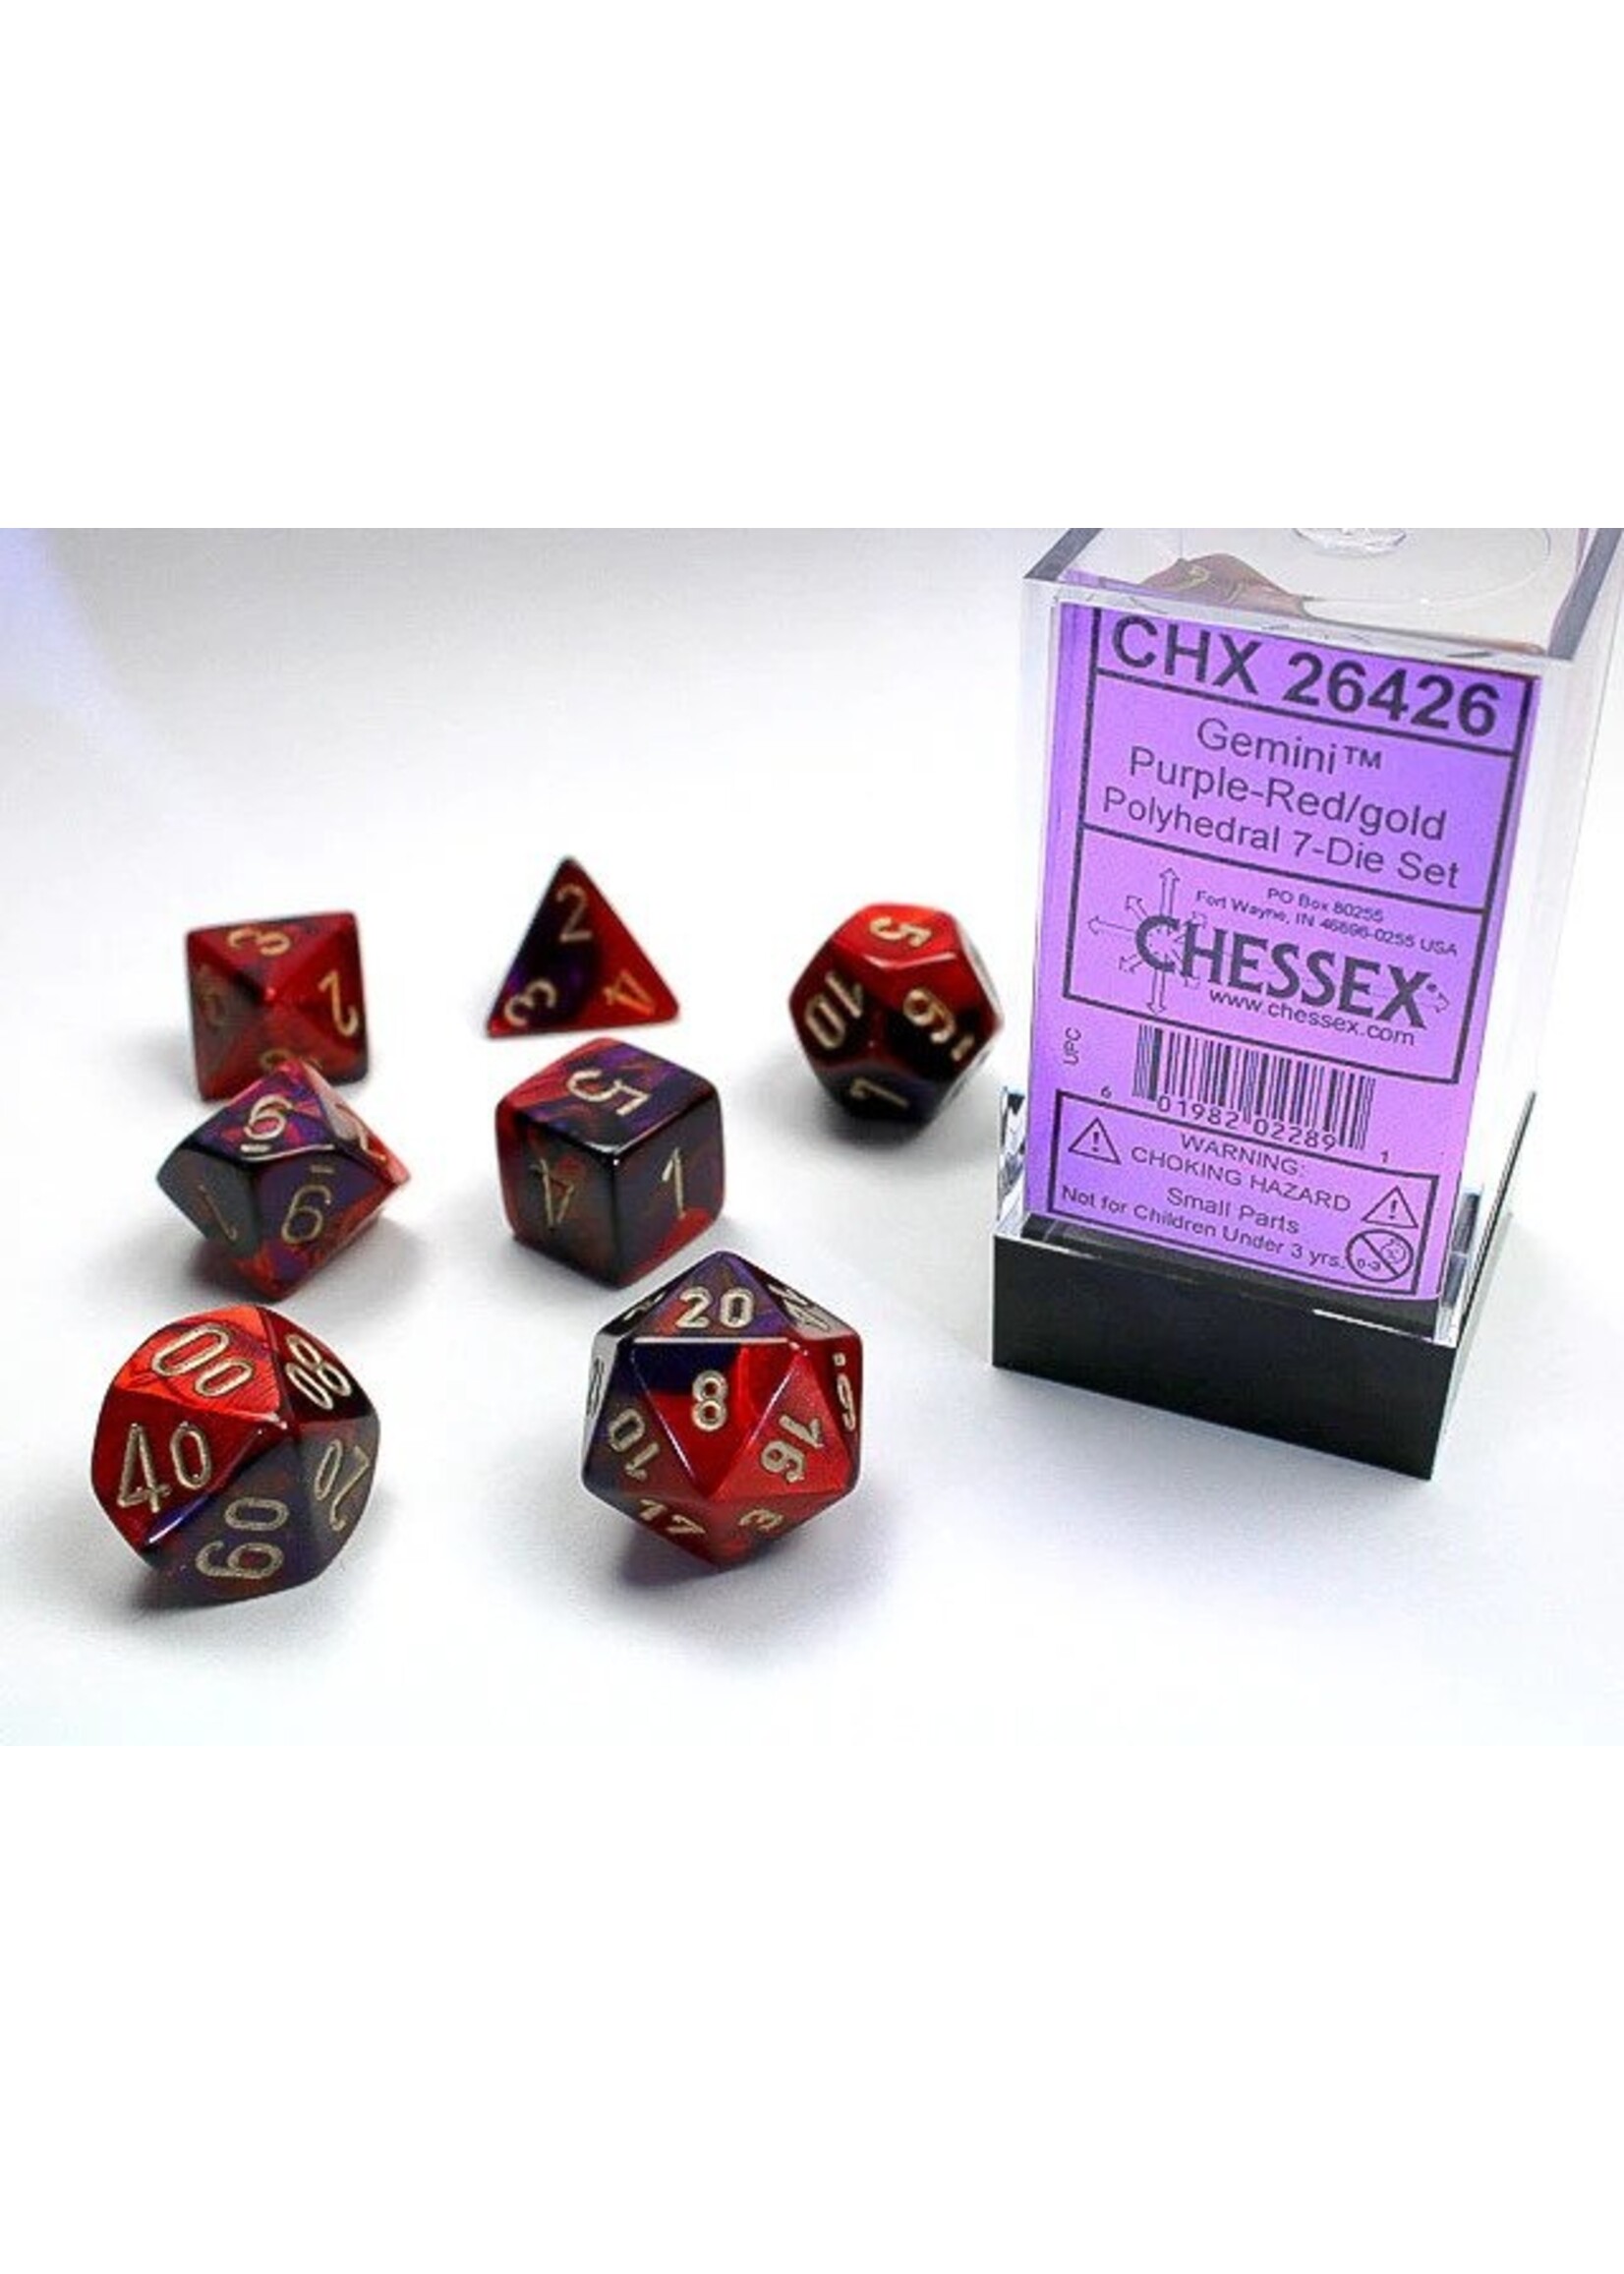 Chessex GMNI 7die purple-red/gold